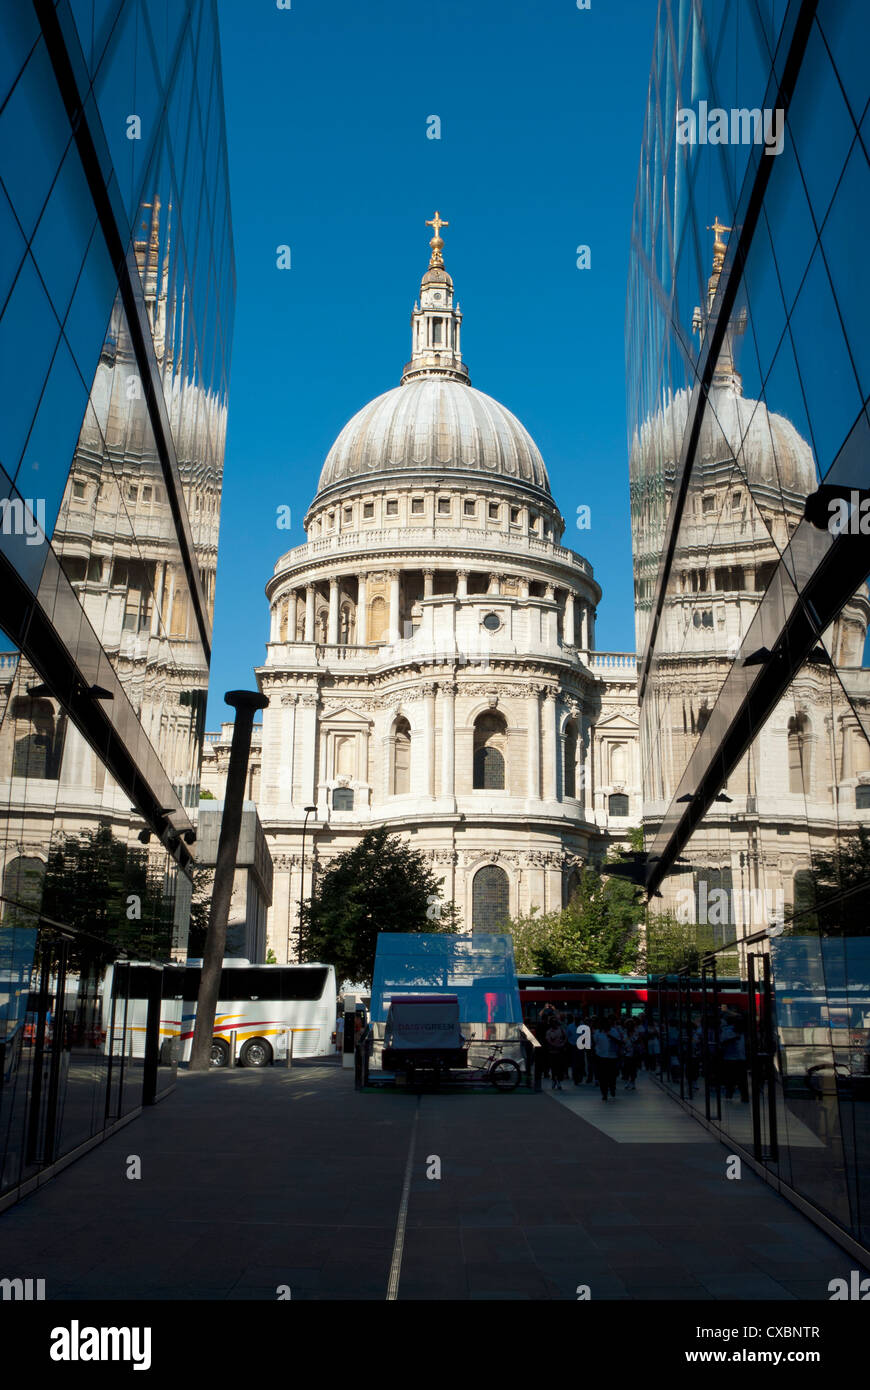 La Cathédrale de St Paul, reflétée dans un bâtiment nouveau changement, Cheapside, ville de Londres, Angleterre, Grande-Bretagne, Royaume-Uni Banque D'Images